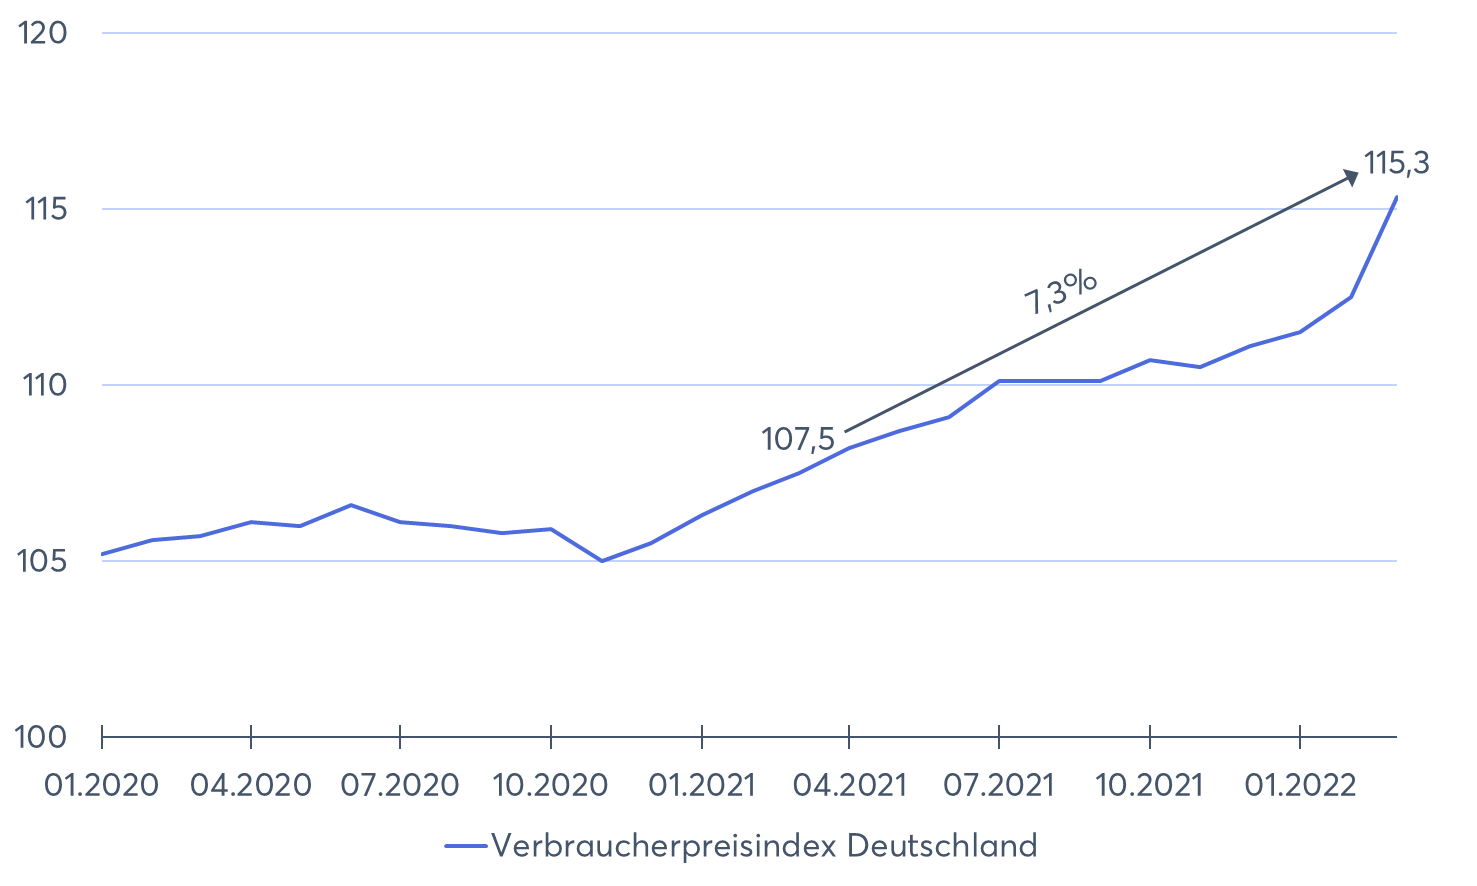 Verbraucherpreisindex Deutschland 2020 - 2022